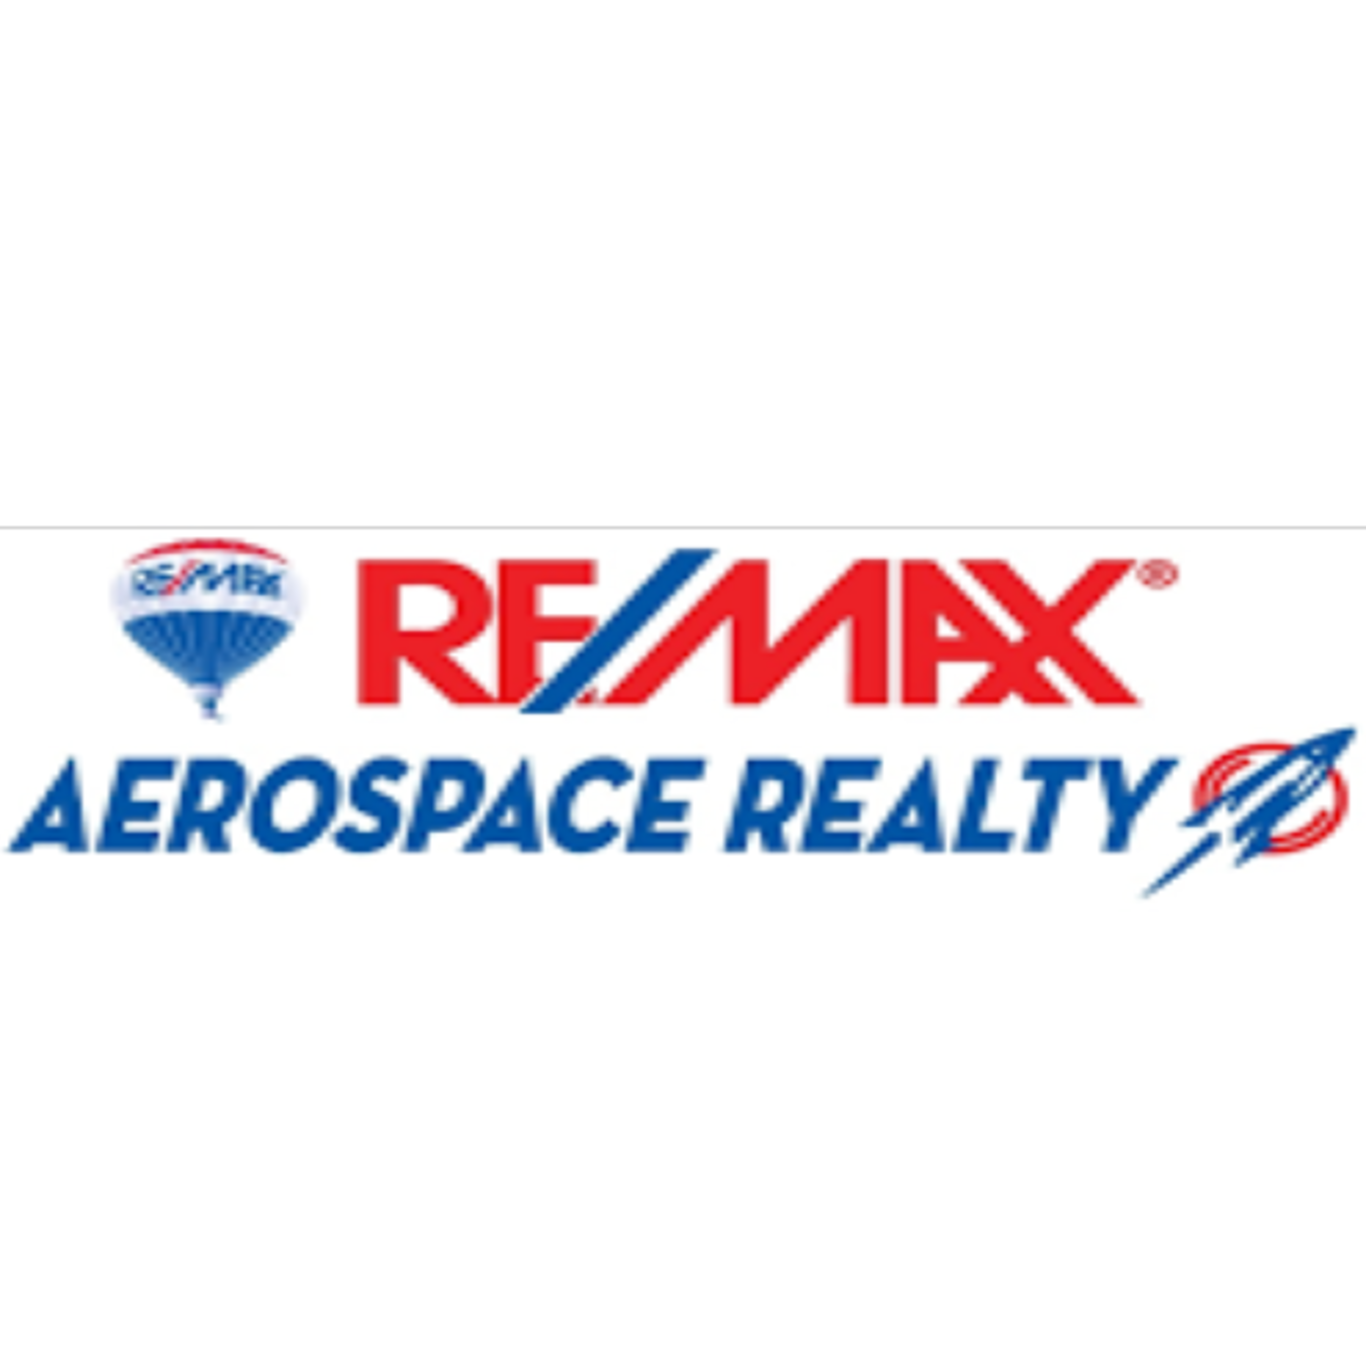 Anna-May Smith | RE/MAX Aerospace Realty